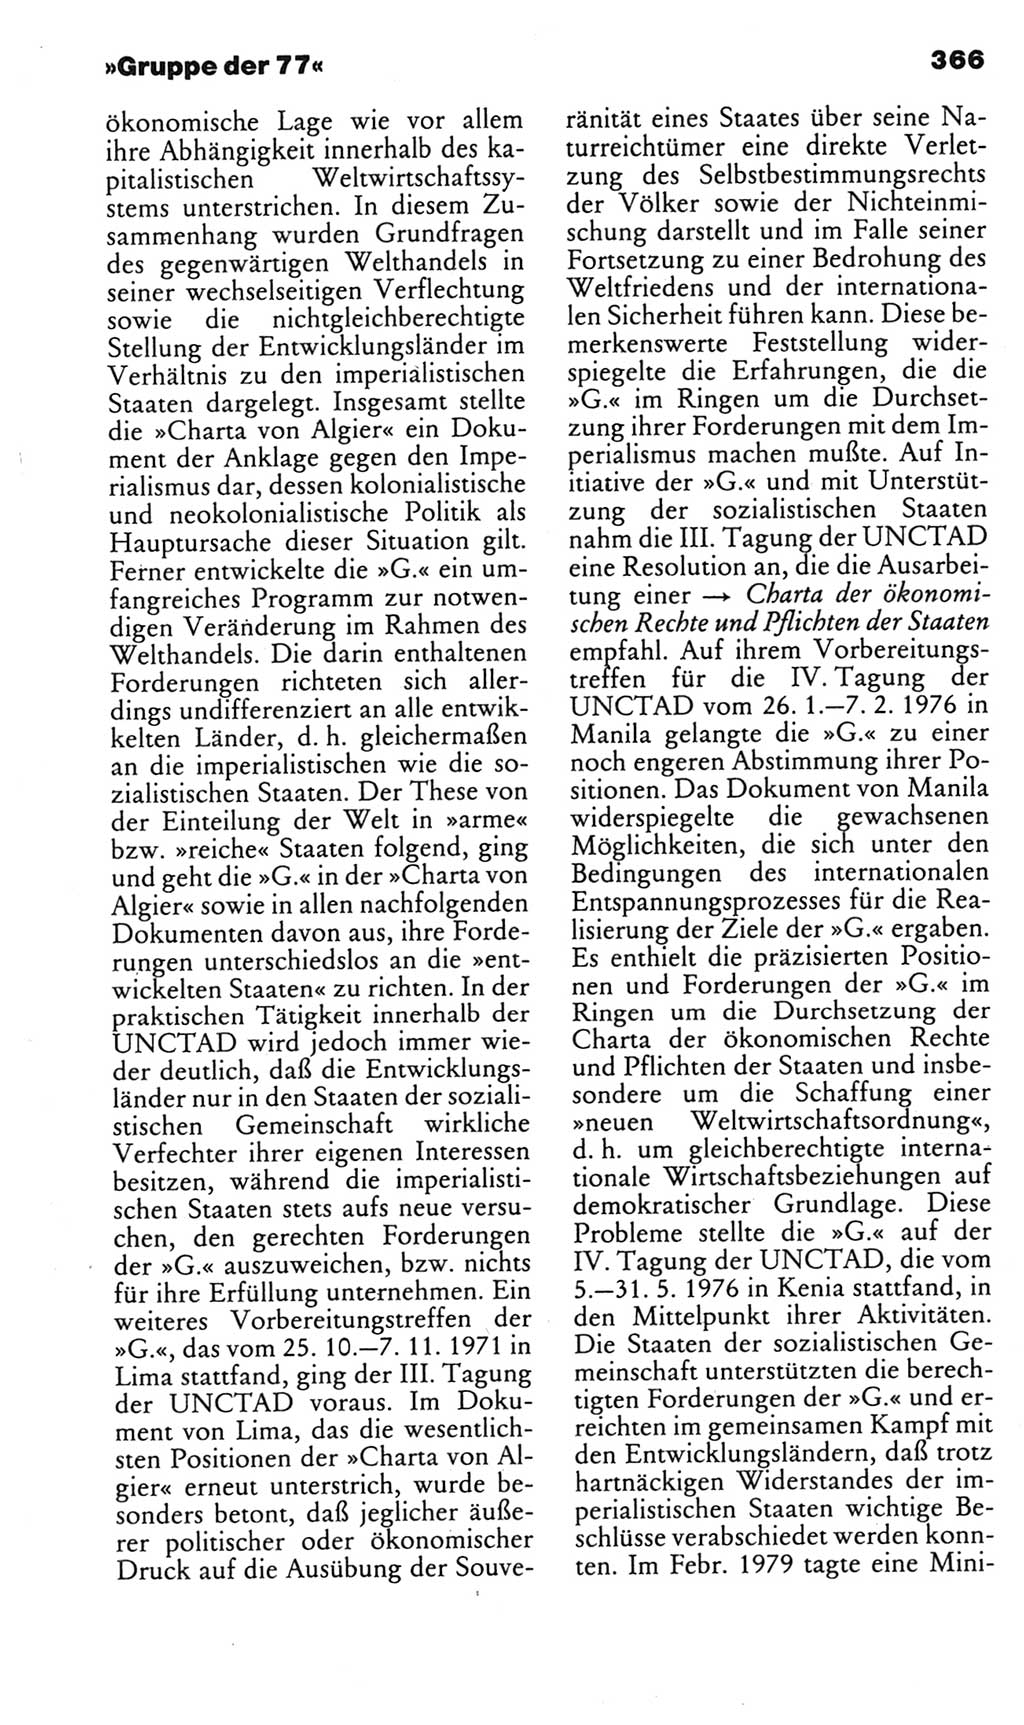 Kleines politisches Wörterbuch [Deutsche Demokratische Republik (DDR)] 1985, Seite 366 (Kl. pol. Wb. DDR 1985, S. 366)